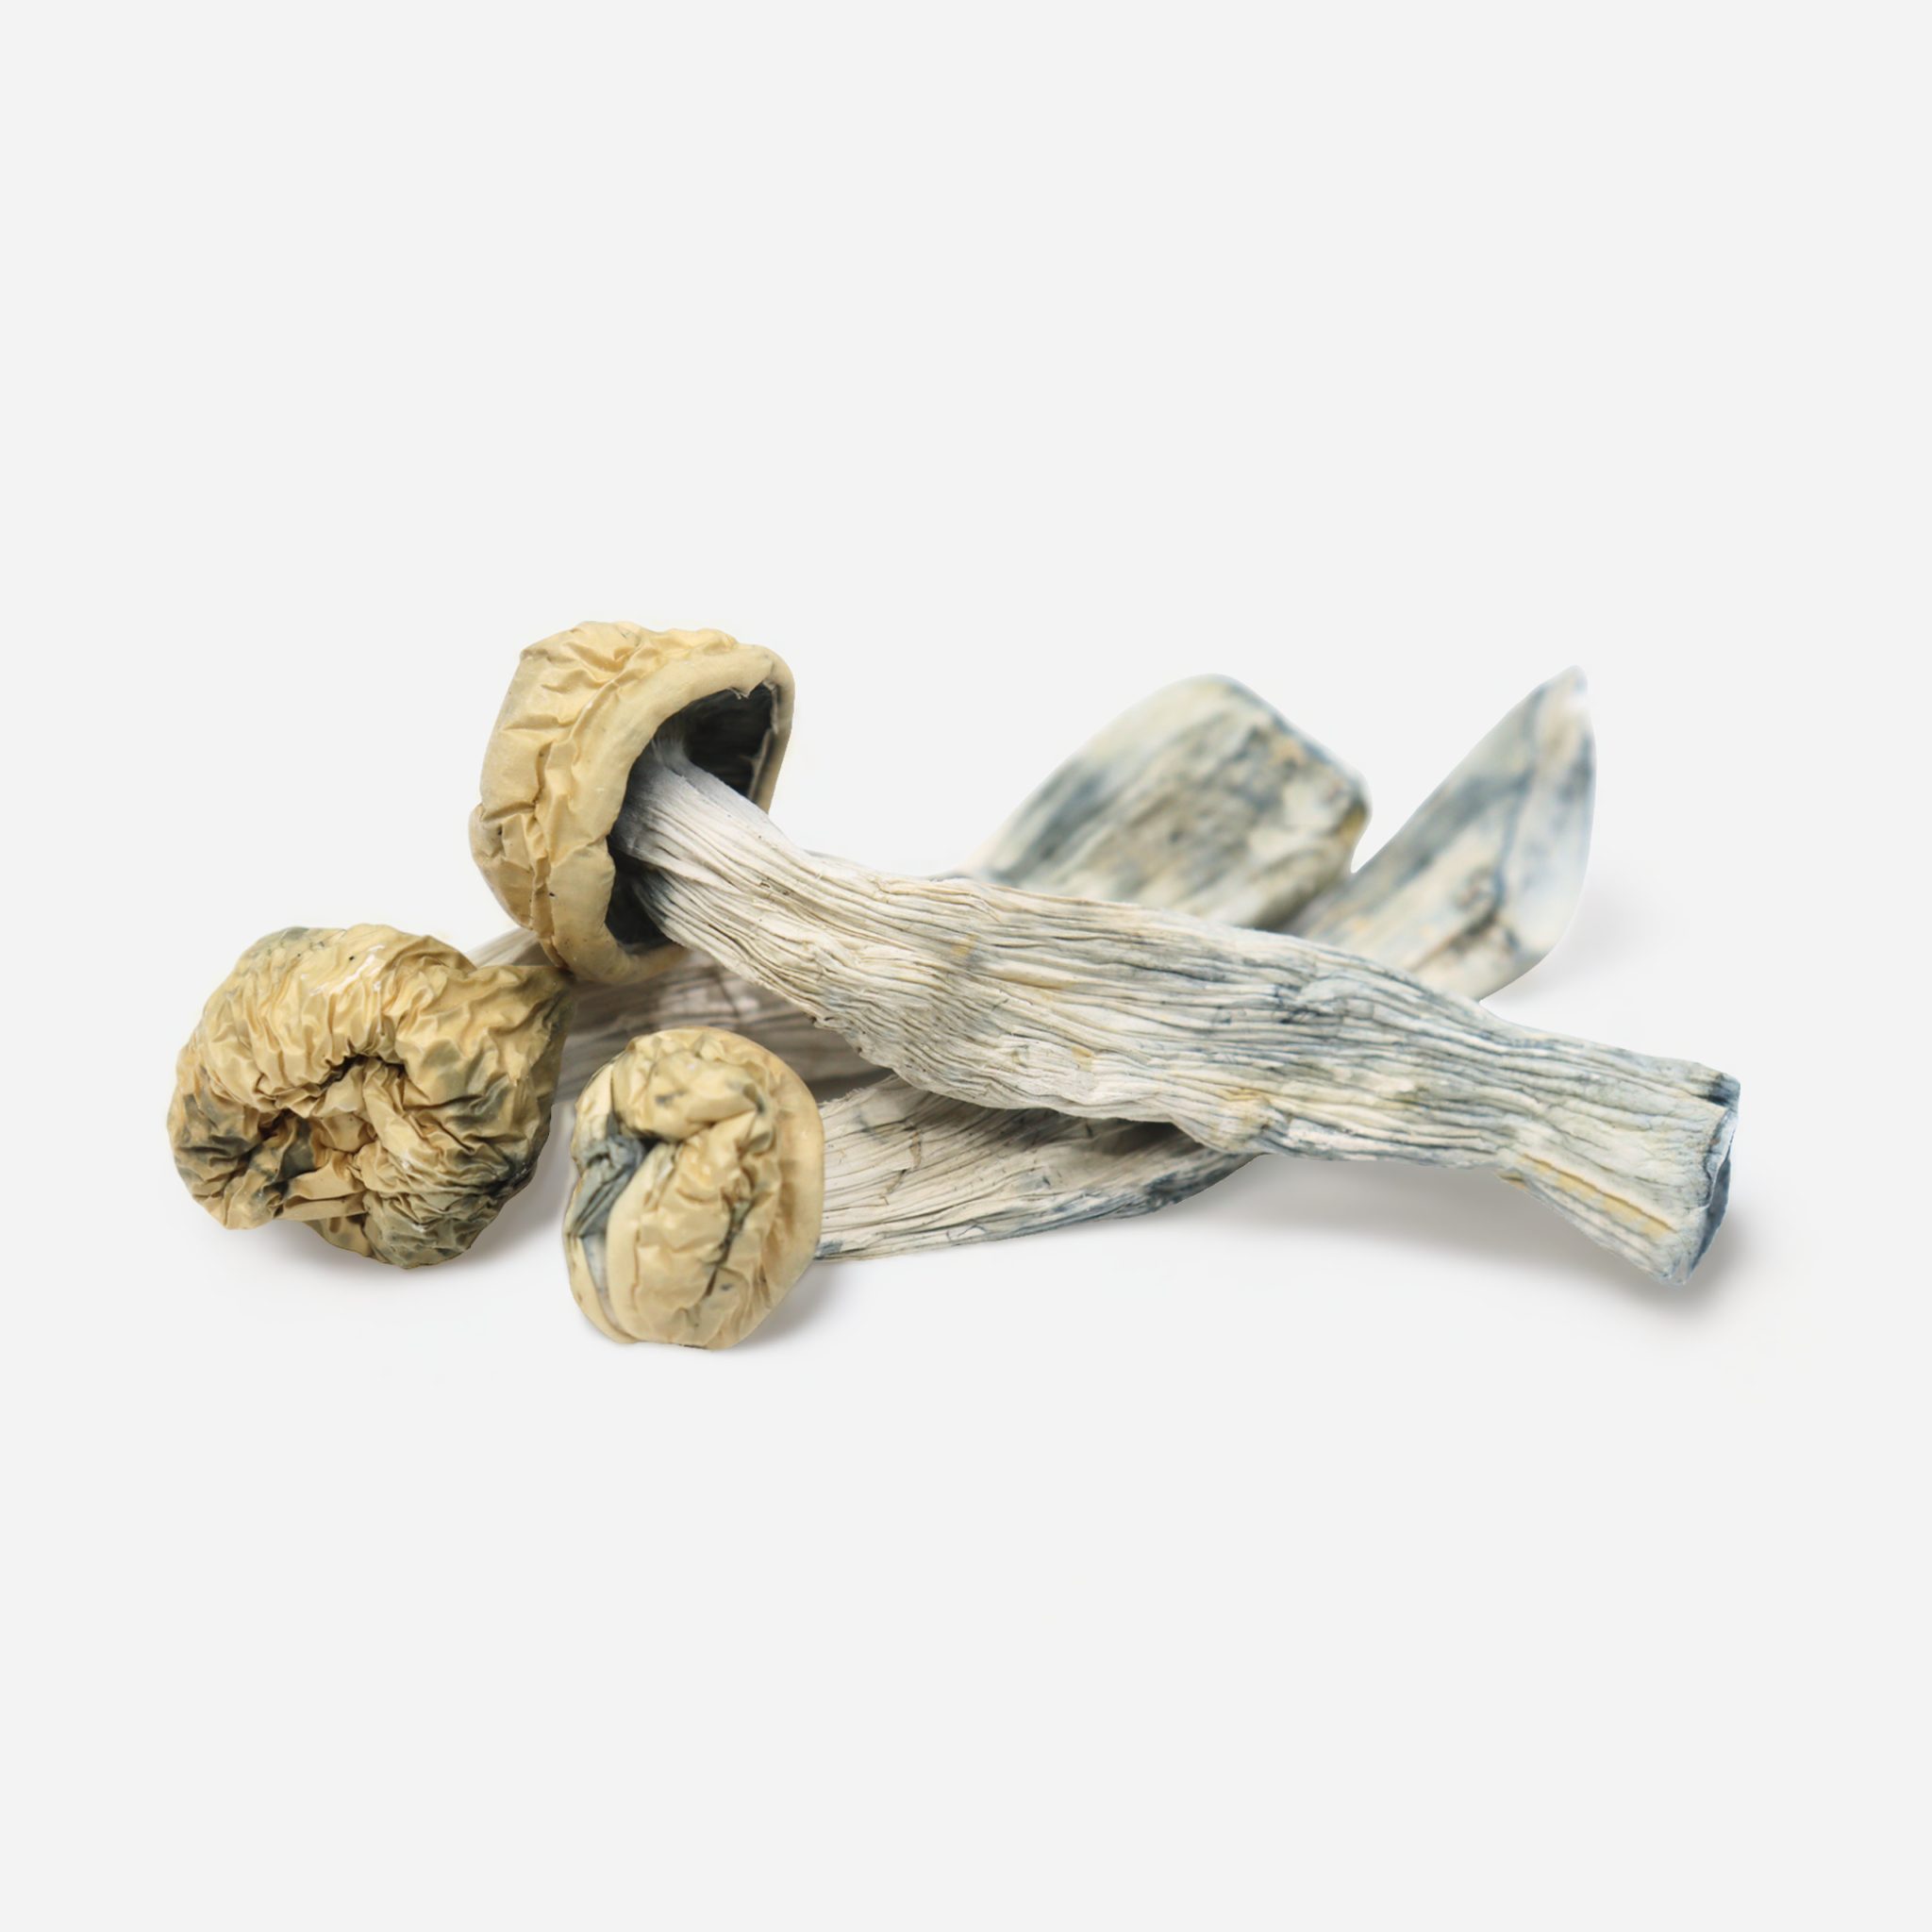 Yeti mushroom strain review